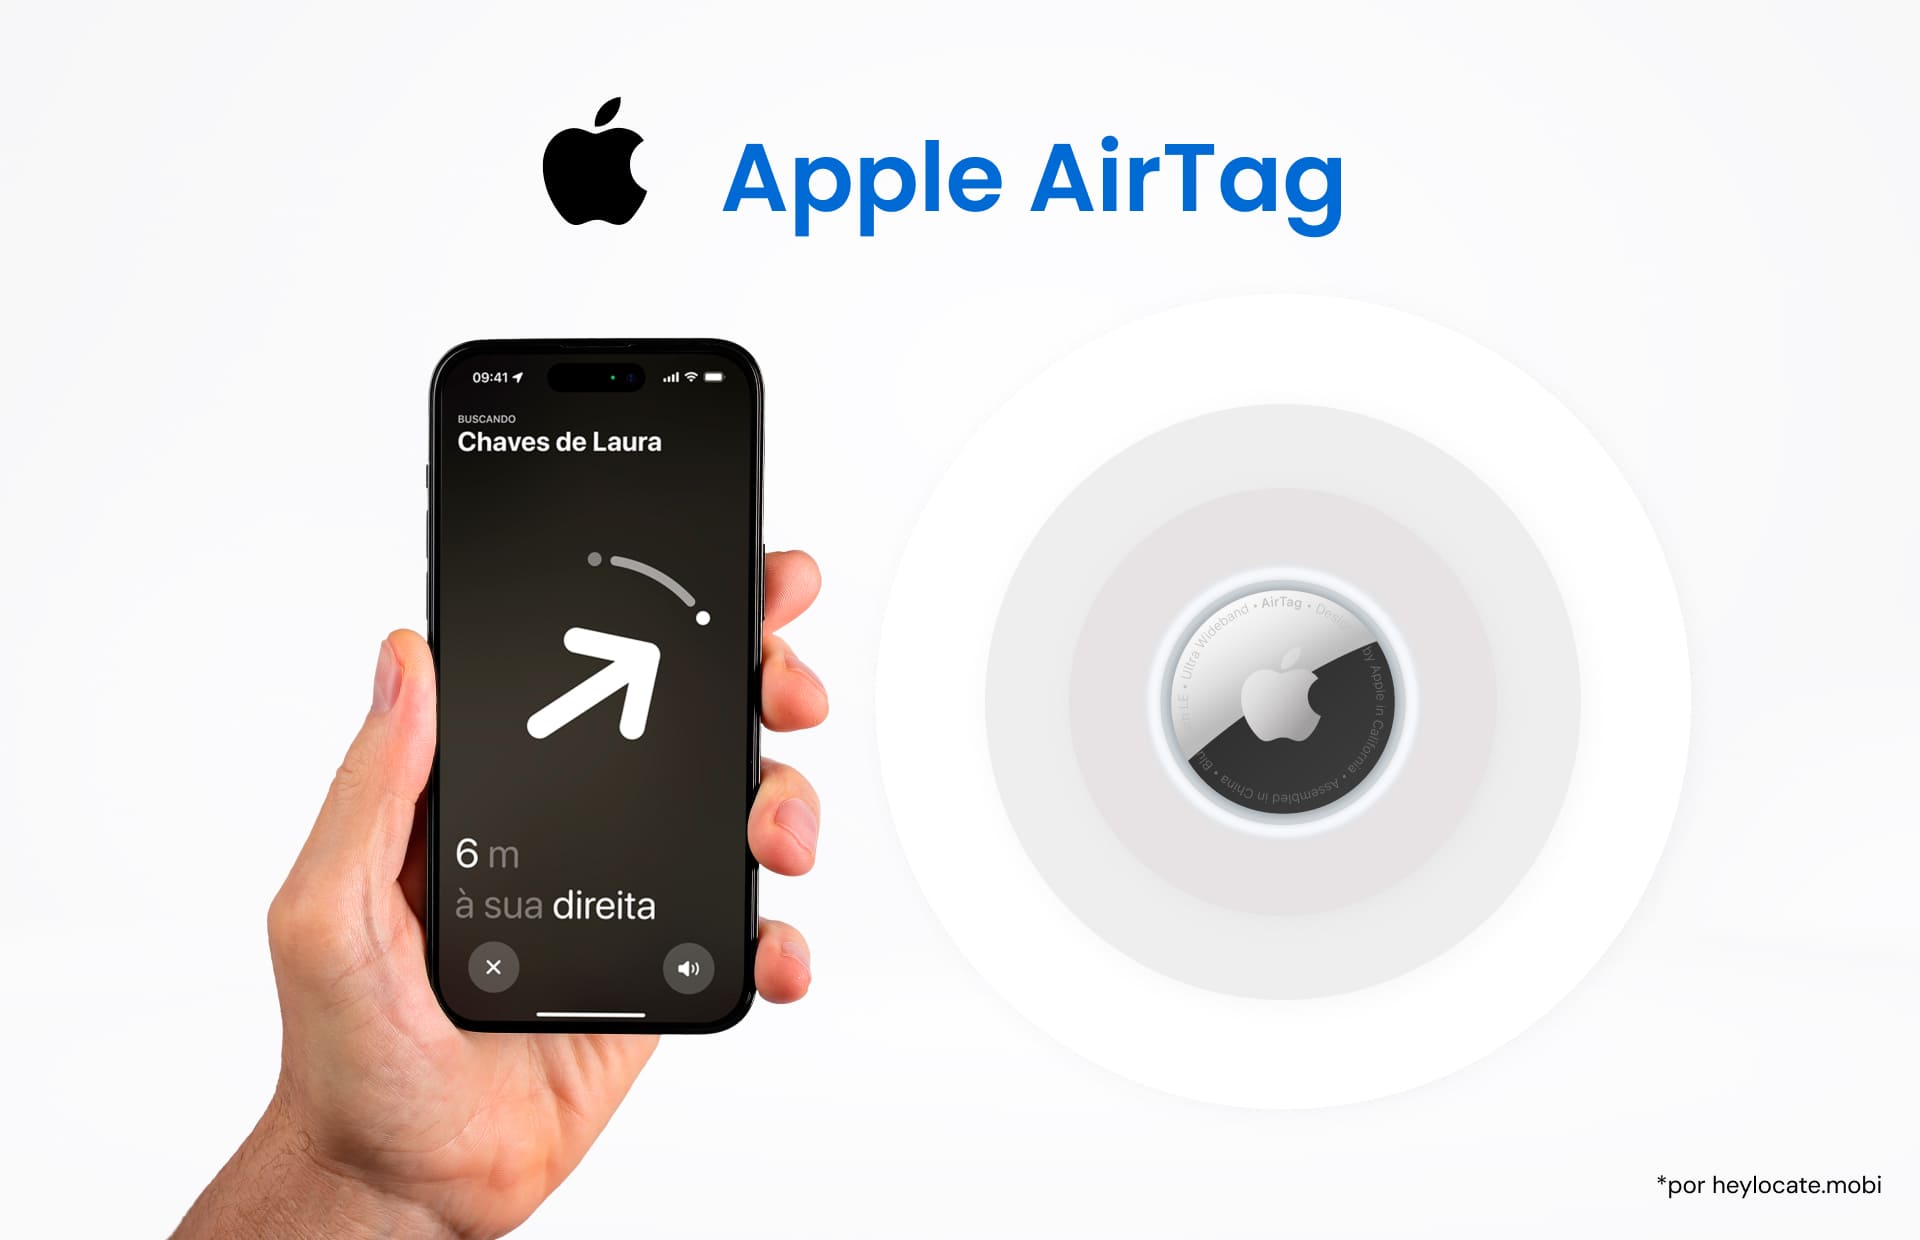 Uma imagem mostrando uma mão segurando um iPhone com a interface de rastreamento do Apple AirTag na tela e um Apple AirTag ilustrando o recurso de rastreamento do dispositivo